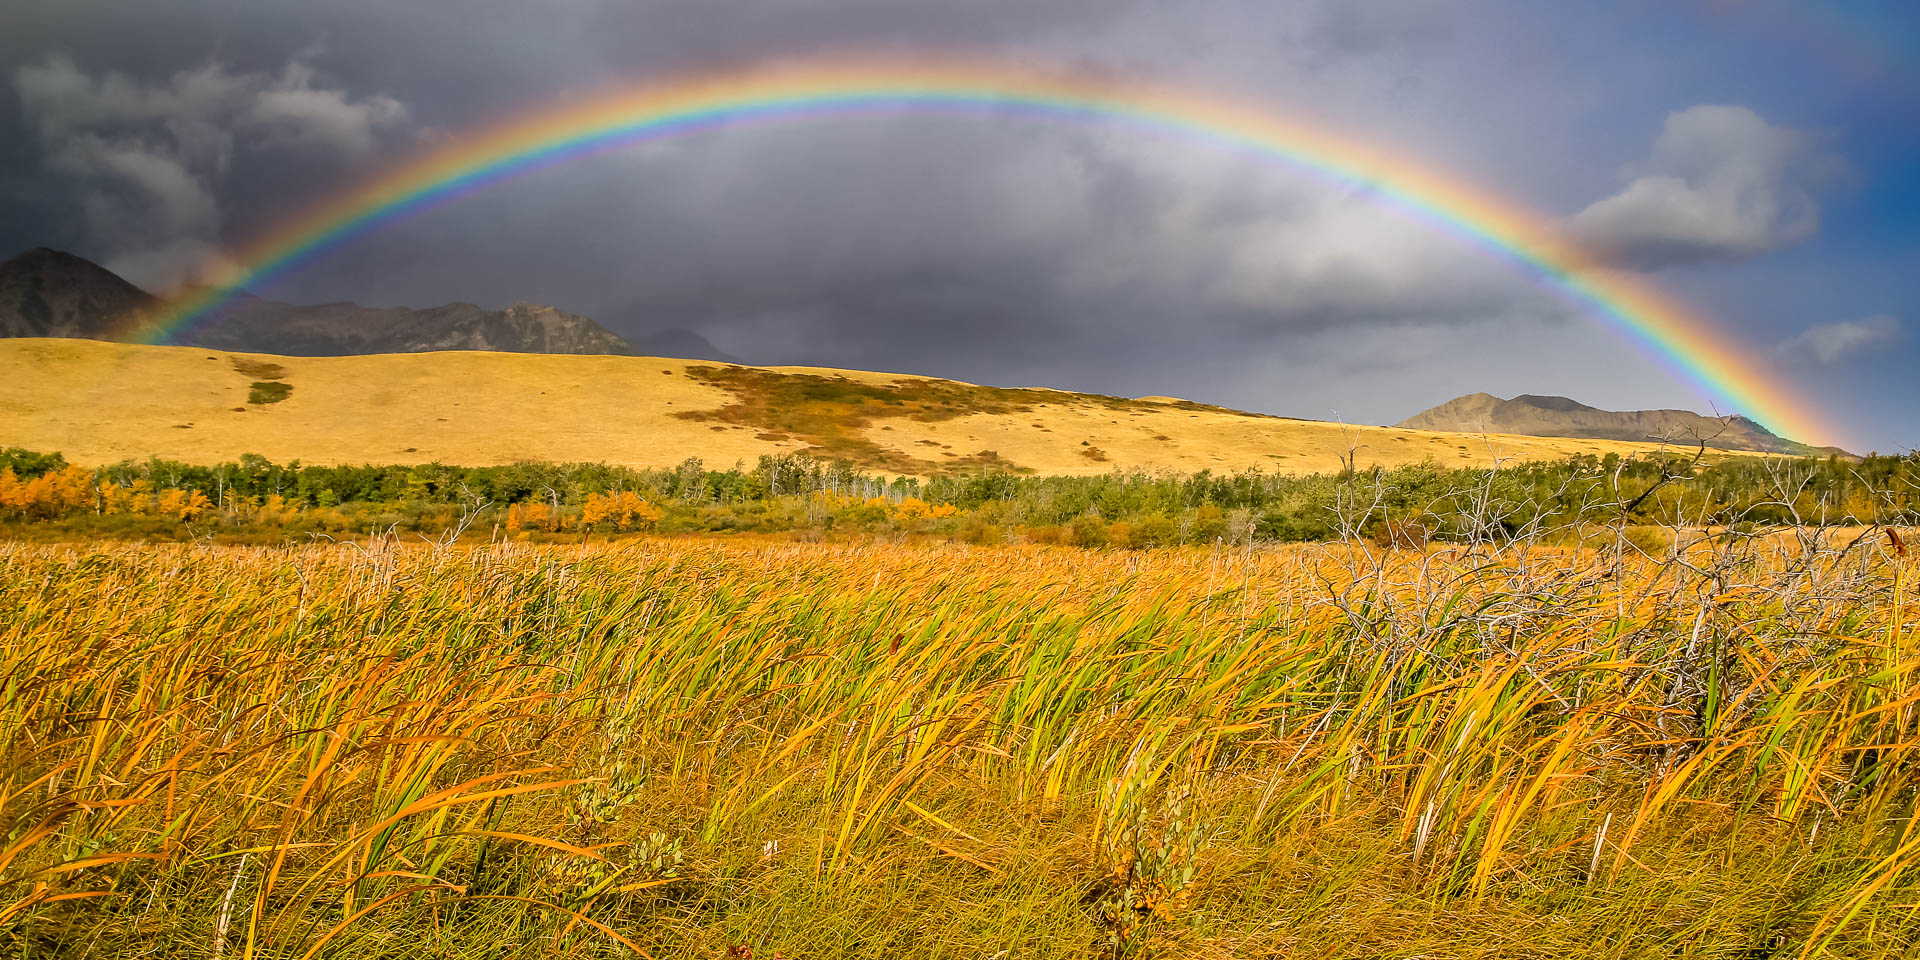 Full rainbow along the road (Montana)